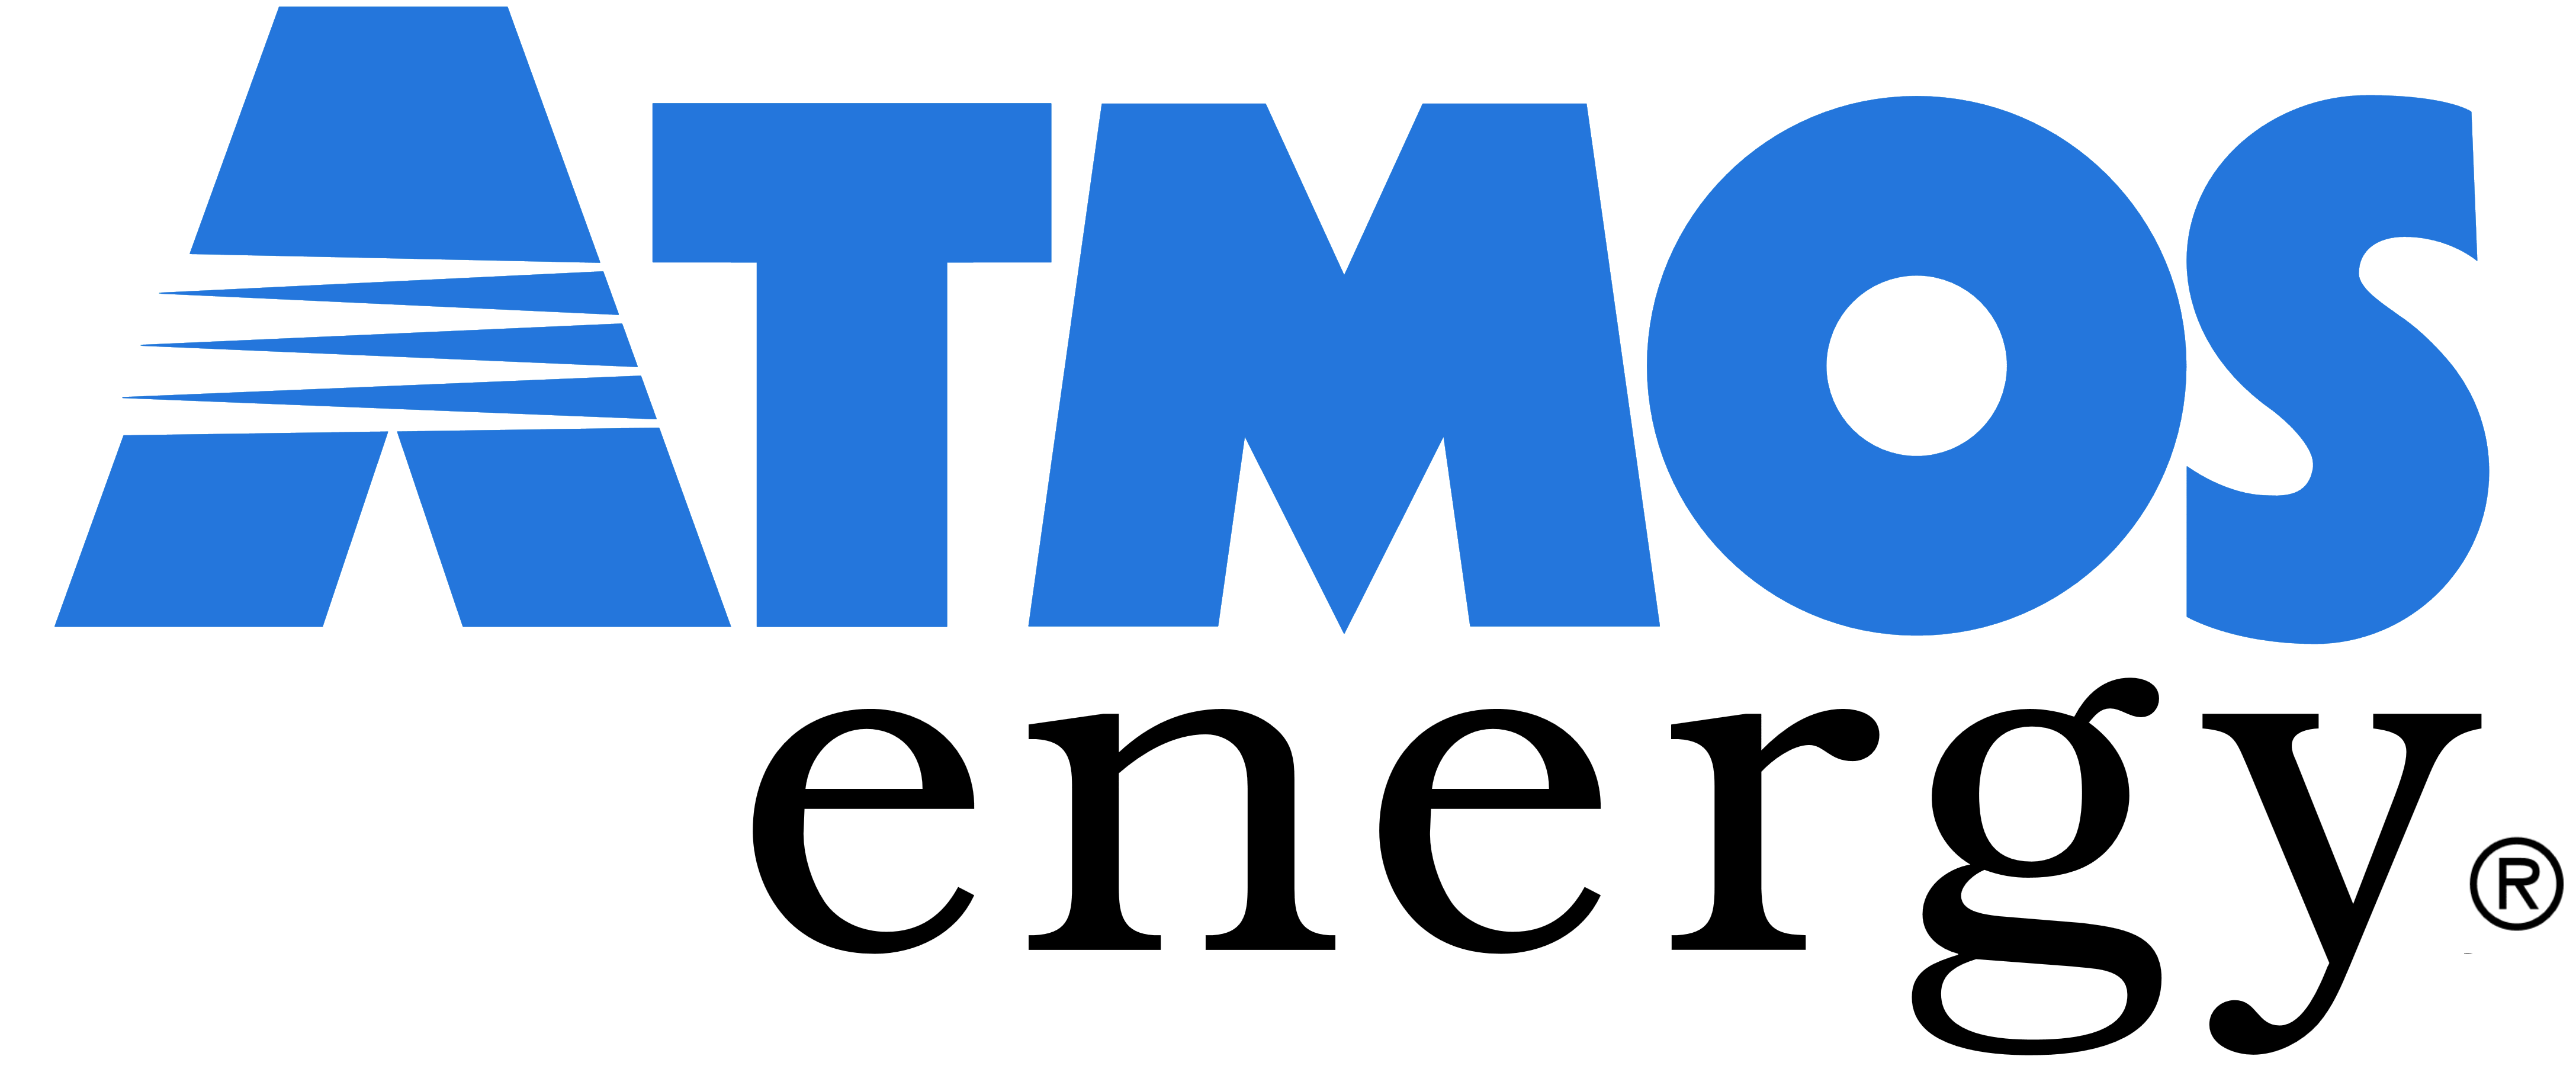 Atmos Energy logo, logotype